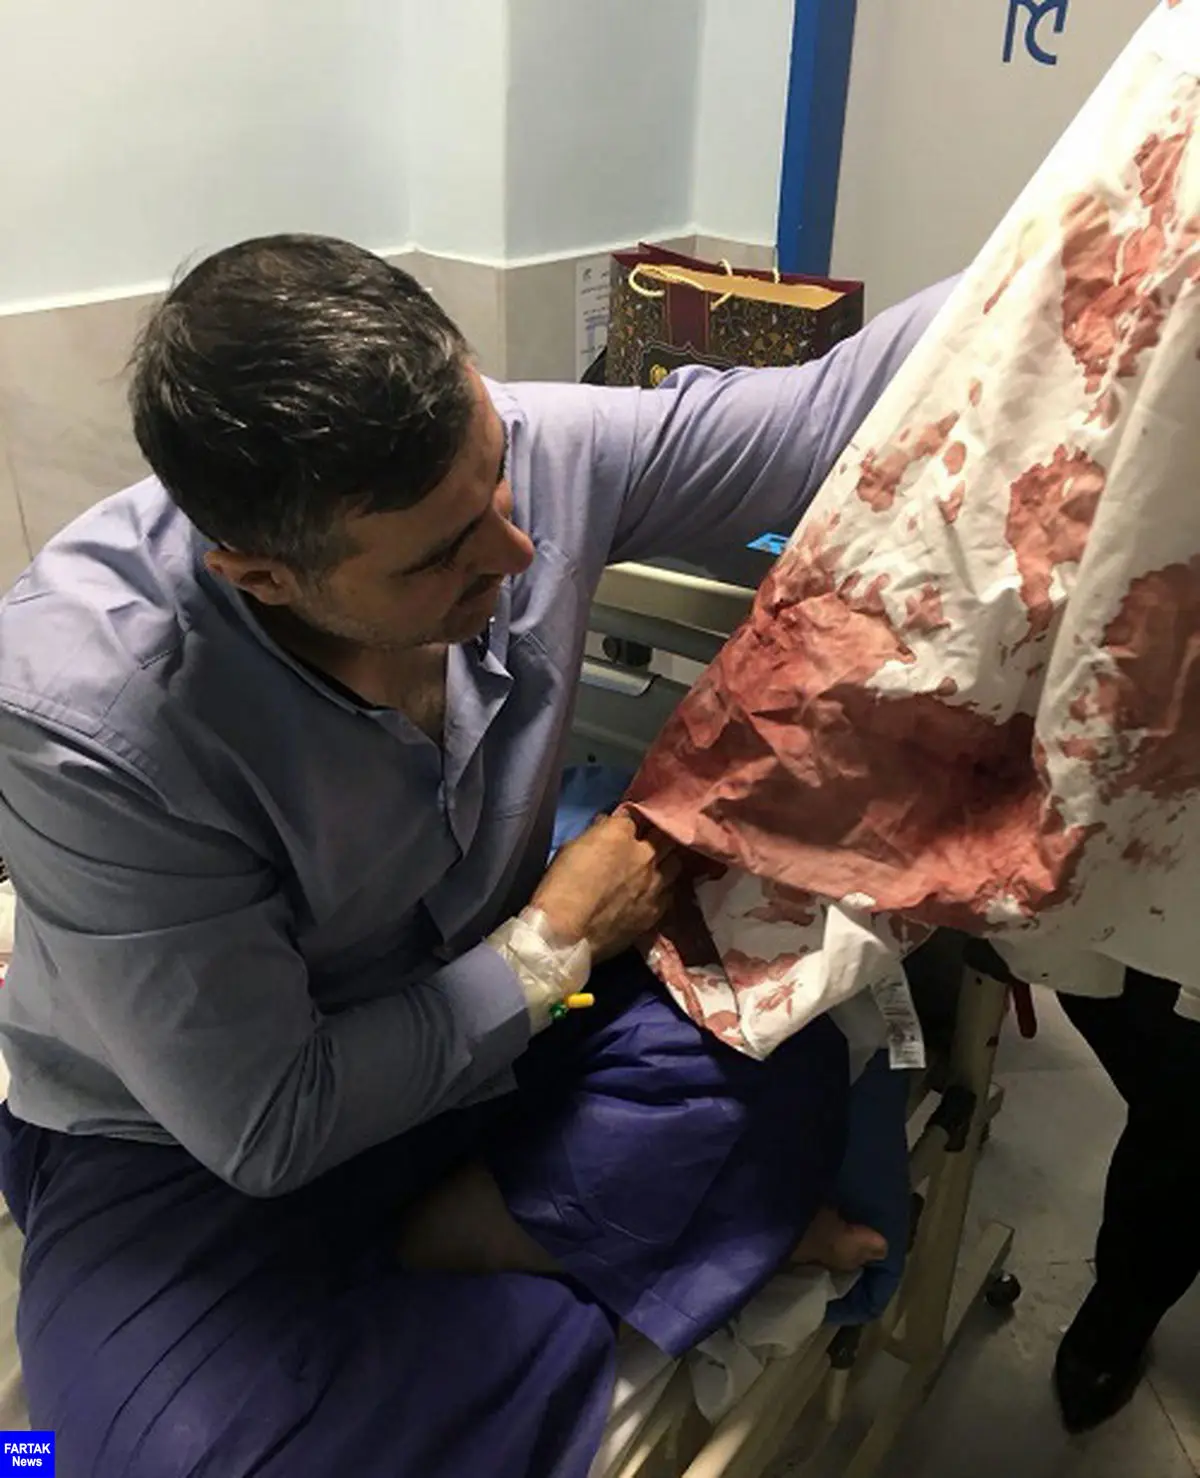 حمام خون در بیمارستان معروف تهران / دکتر کلیه چاقو چاقو شد! + عکس